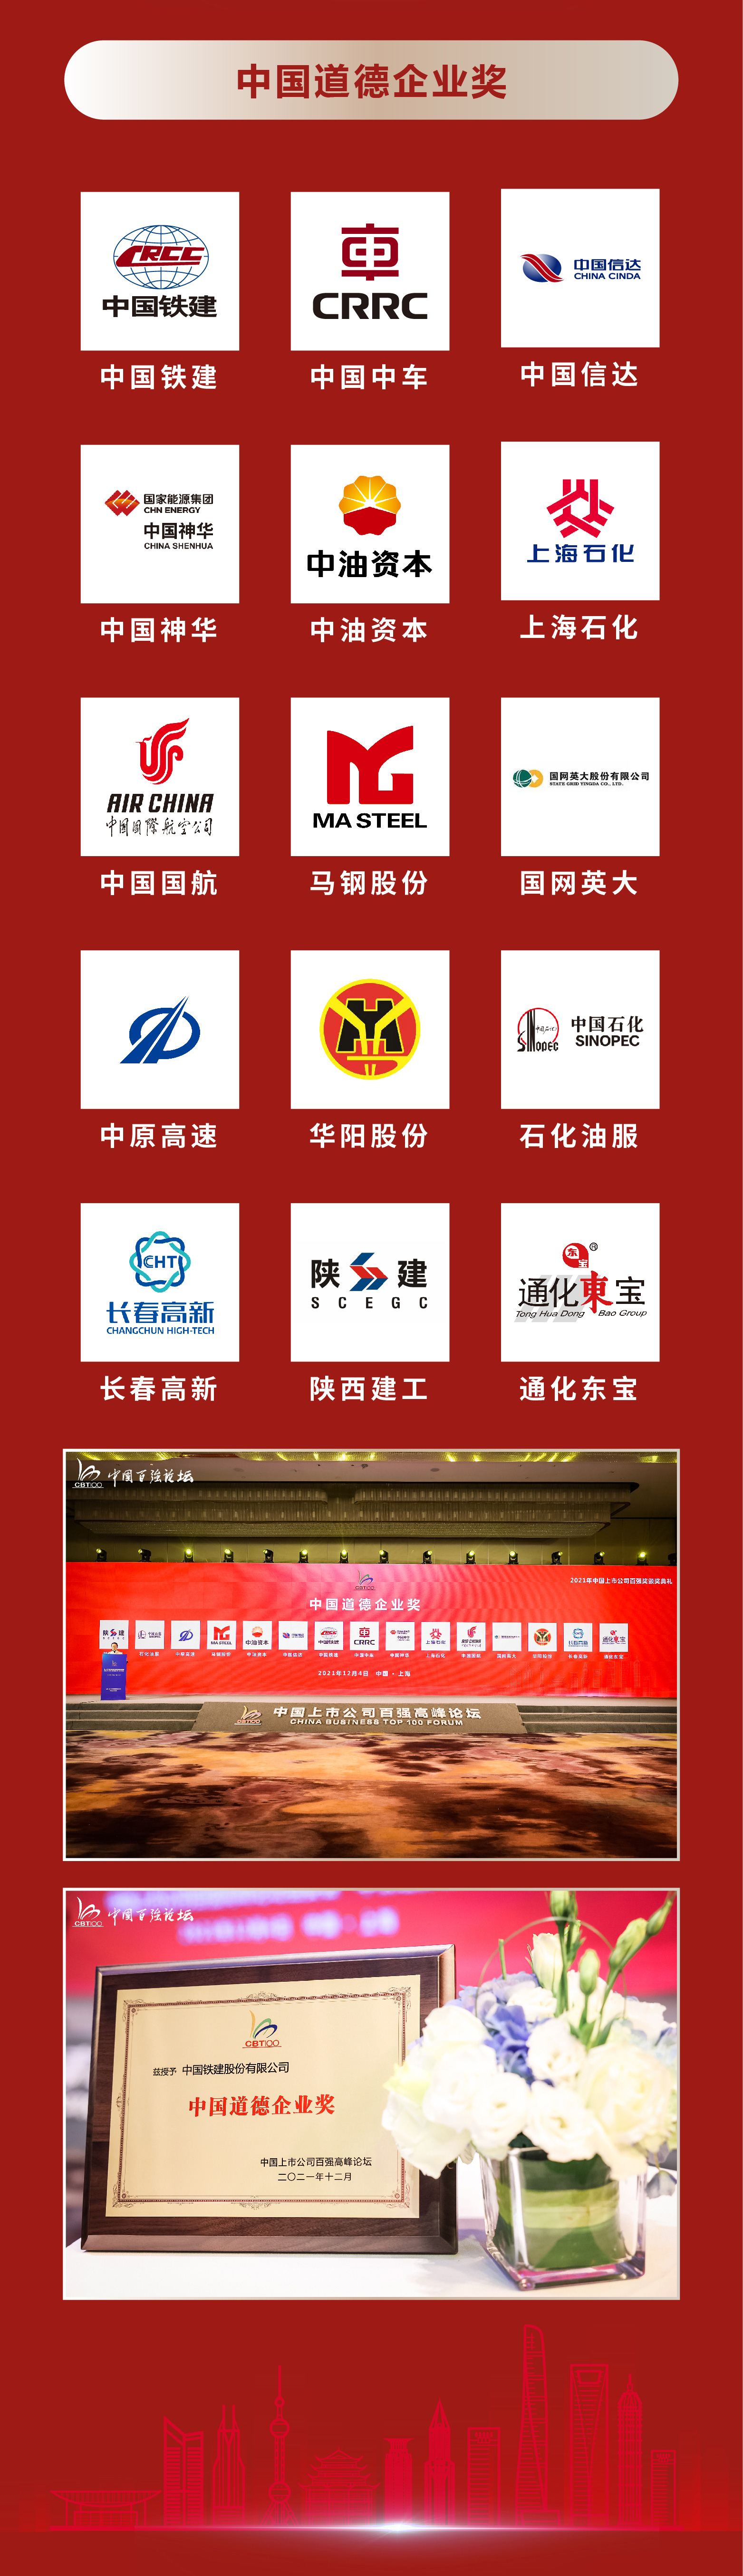 2021年中国上市公司百强奖获奖名单(图6)